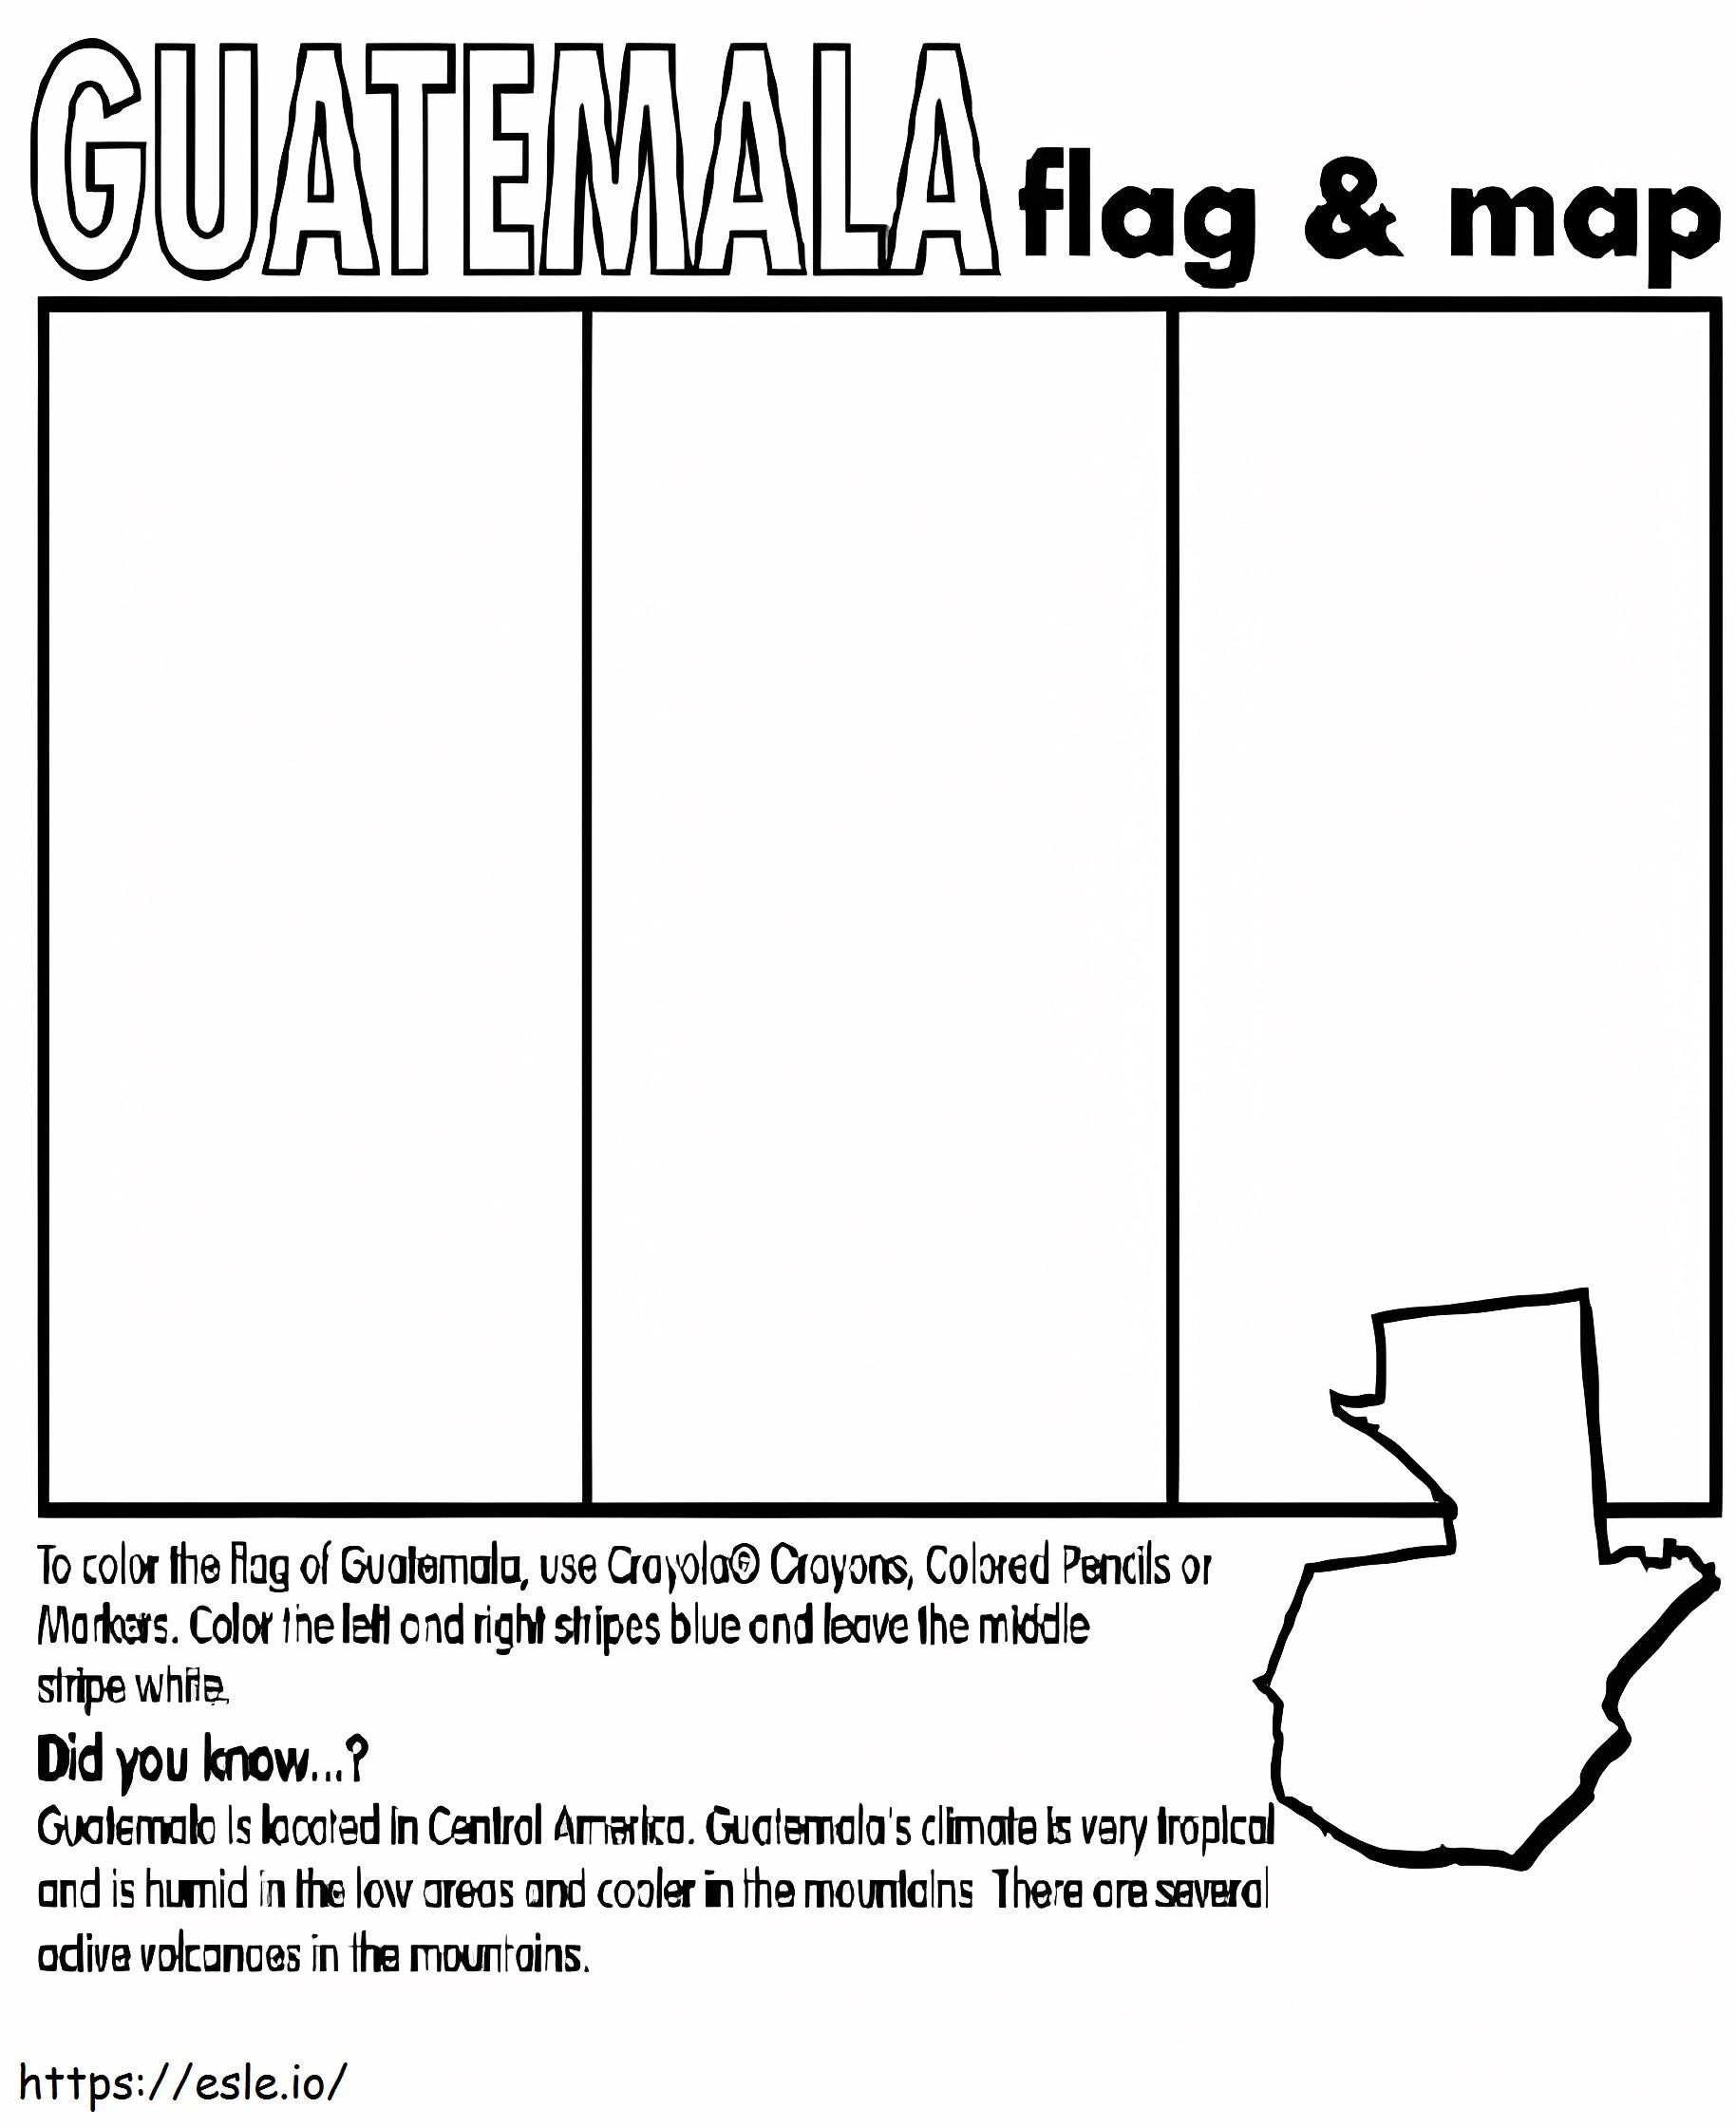 Guatemala Bayrağı ve Haritası boyama